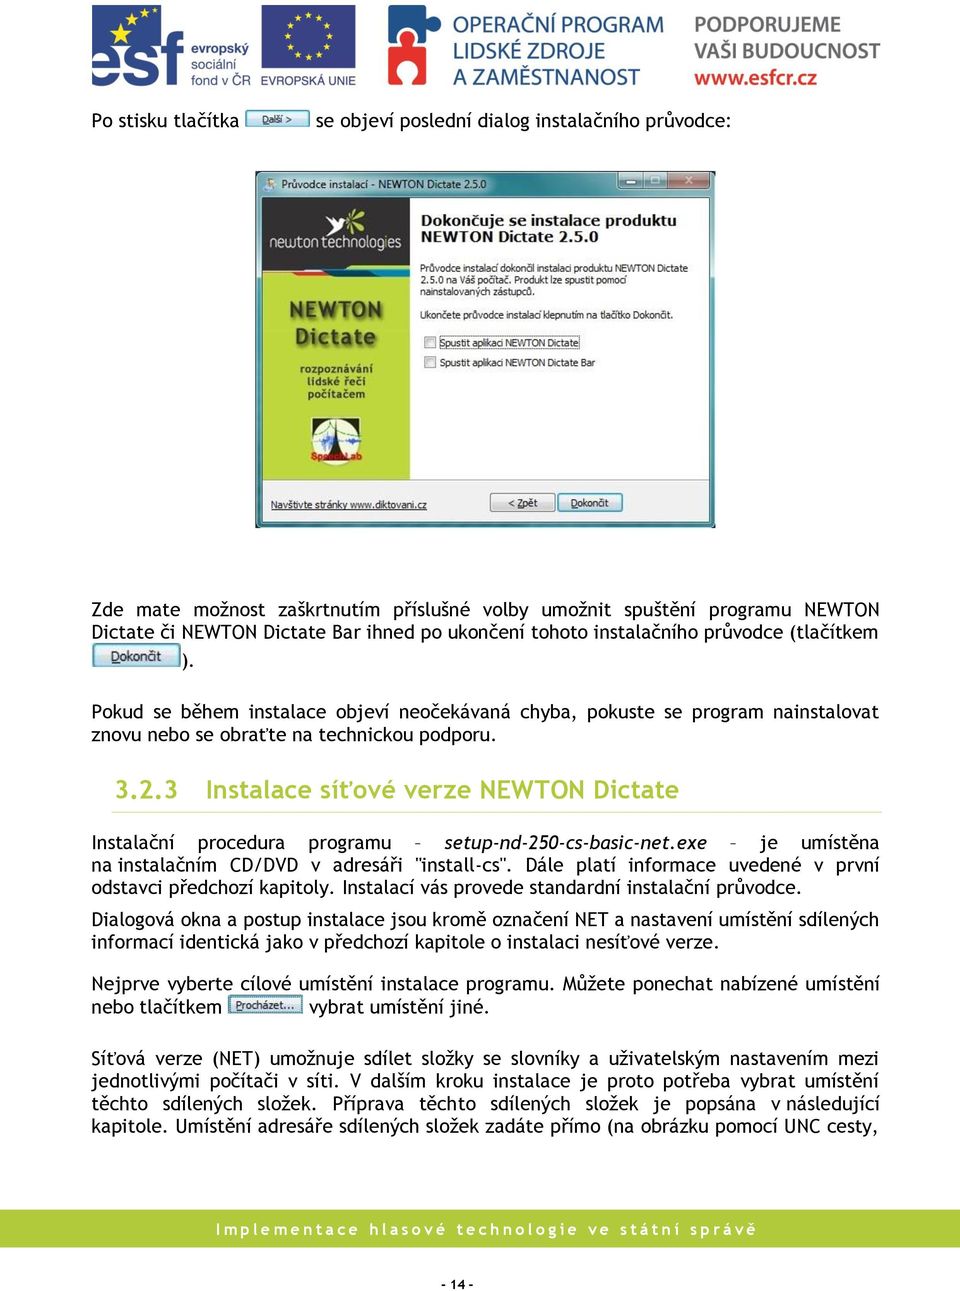 3 Instalace síťové verze NEWTON Dictate Instalační procedura programu setup-nd-250-cs-basic-net.exe je umístěna na instalačním CD/DVD v adresáři "install-cs".